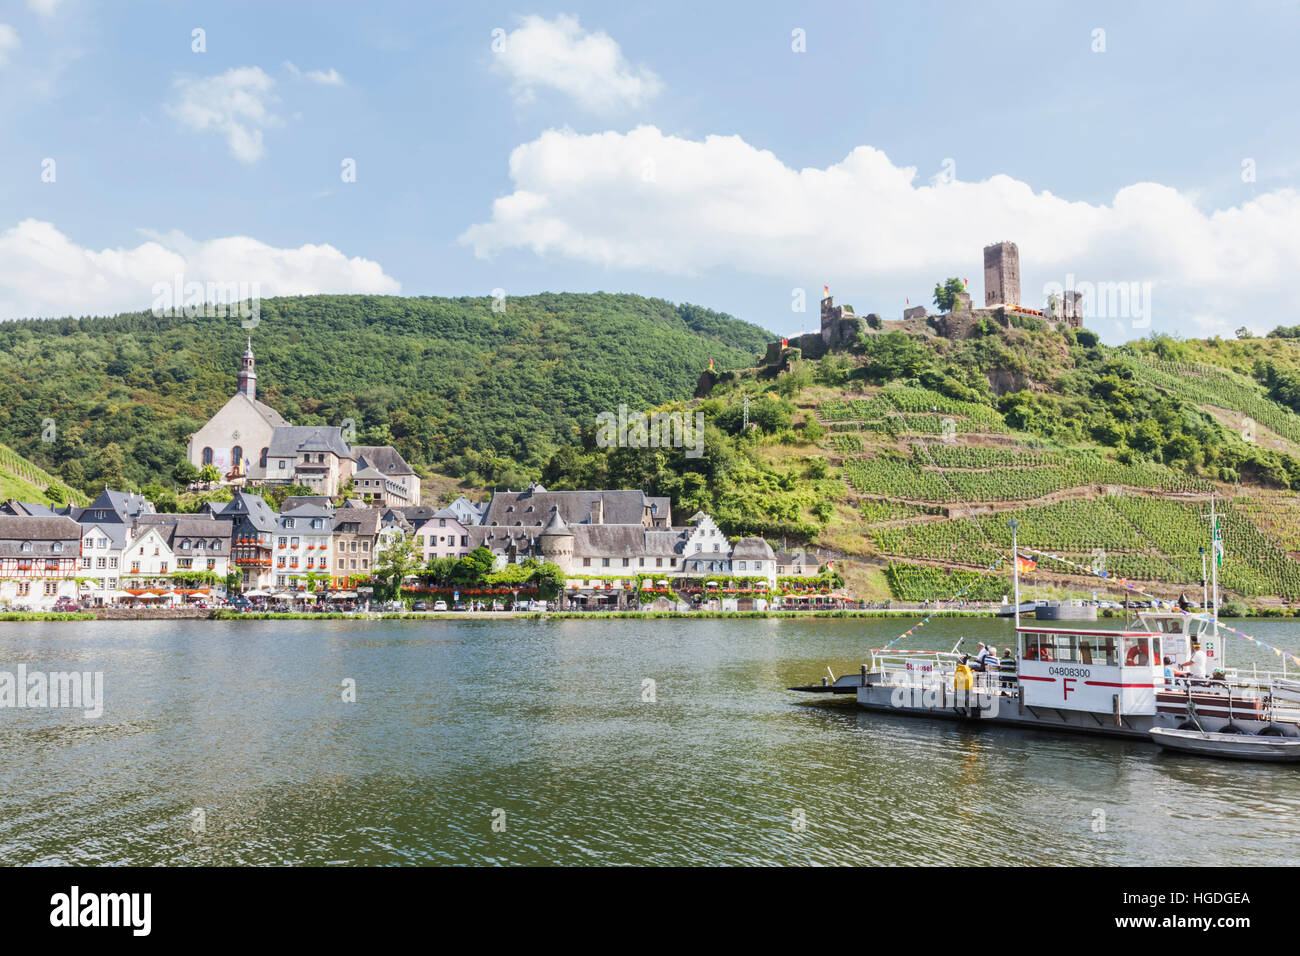 Alemania, Renania-Palatinado, Moselle, Beilstein y Metternich Castillo Foto de stock